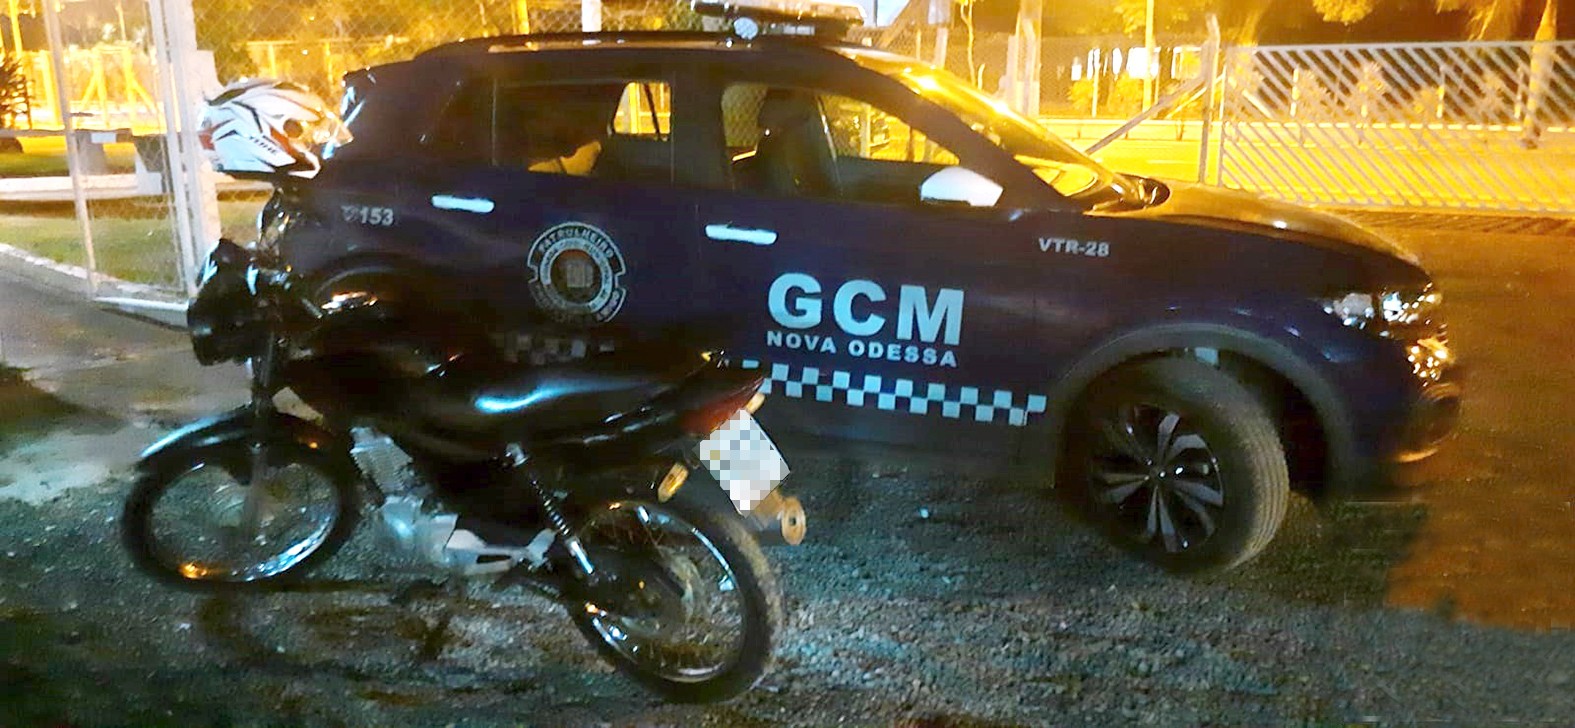 Após perseguição, menor é detido com moto furtada em Nova Odessa